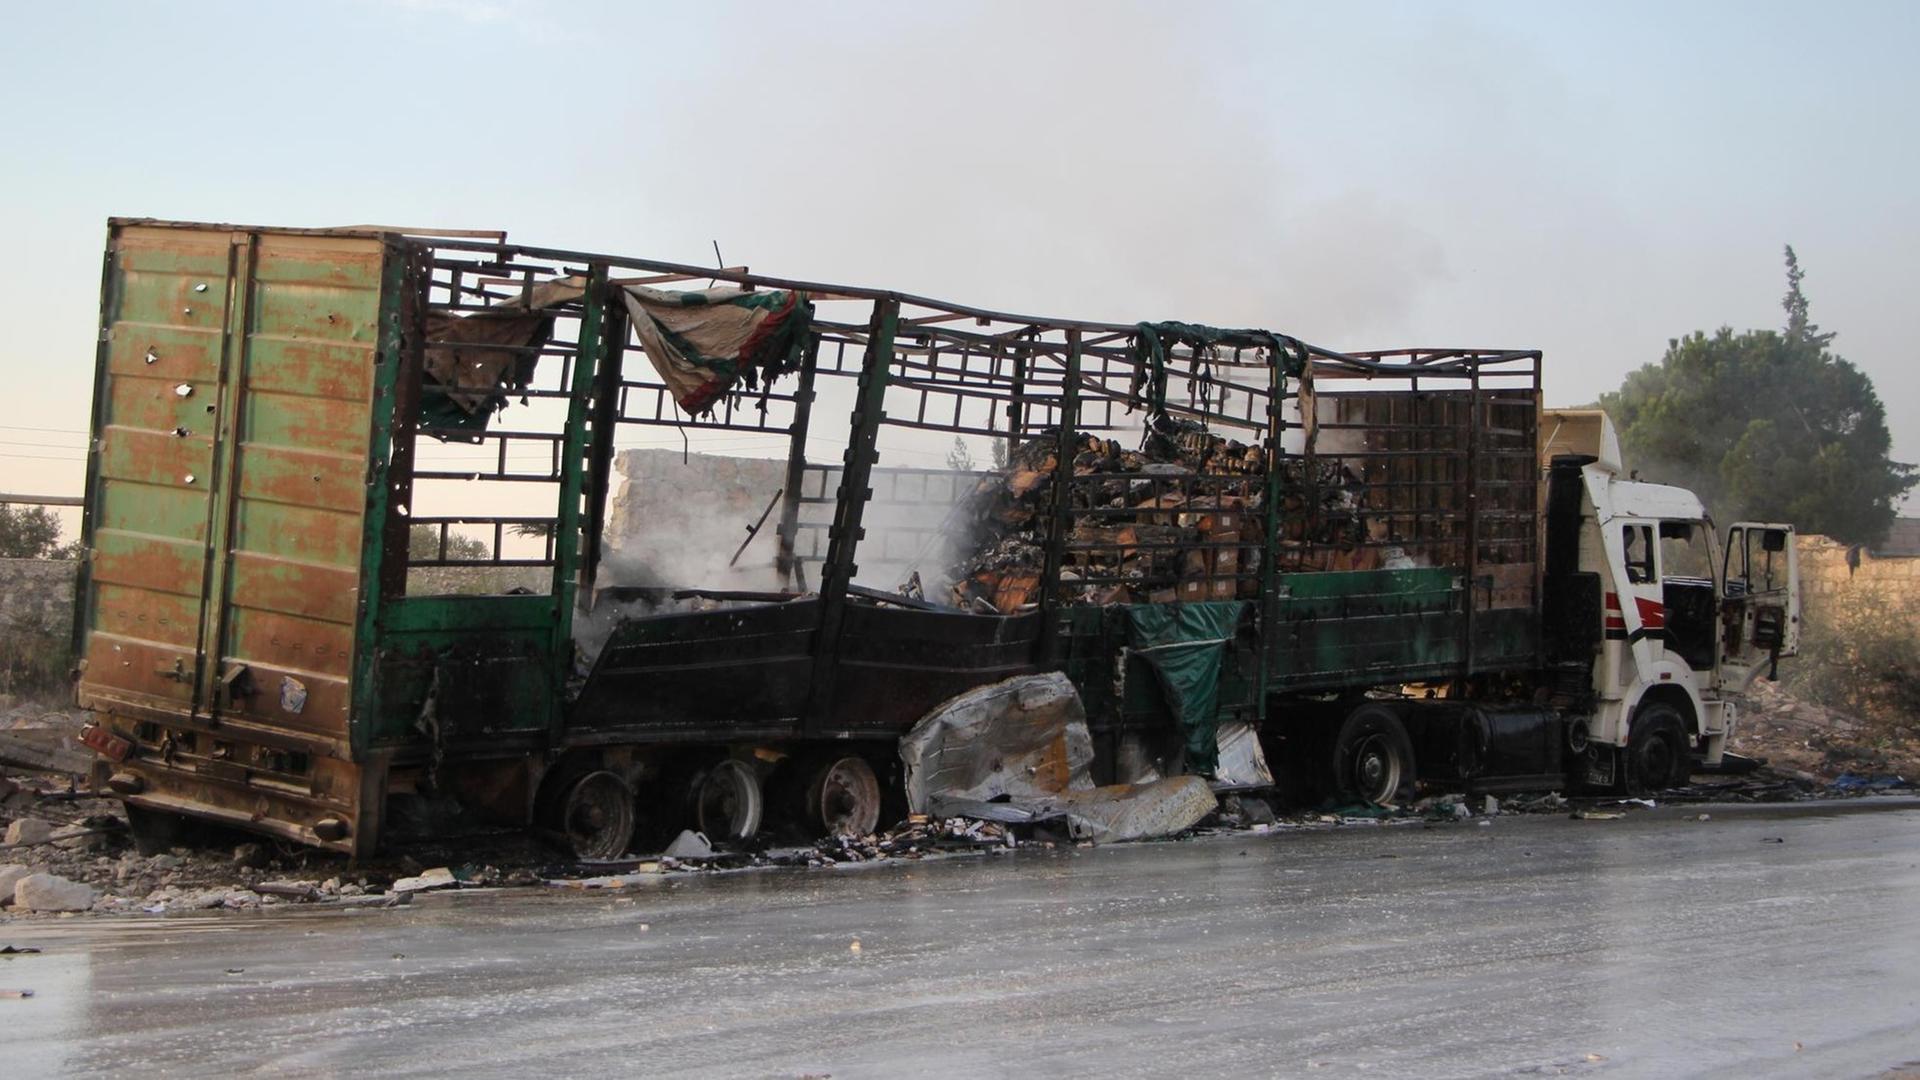 Sie sehen einen der Lastwagen des Hilfskonvois, der aus der Luft angegriffen wurde. Der Lkw ist vollkommen zerstört.